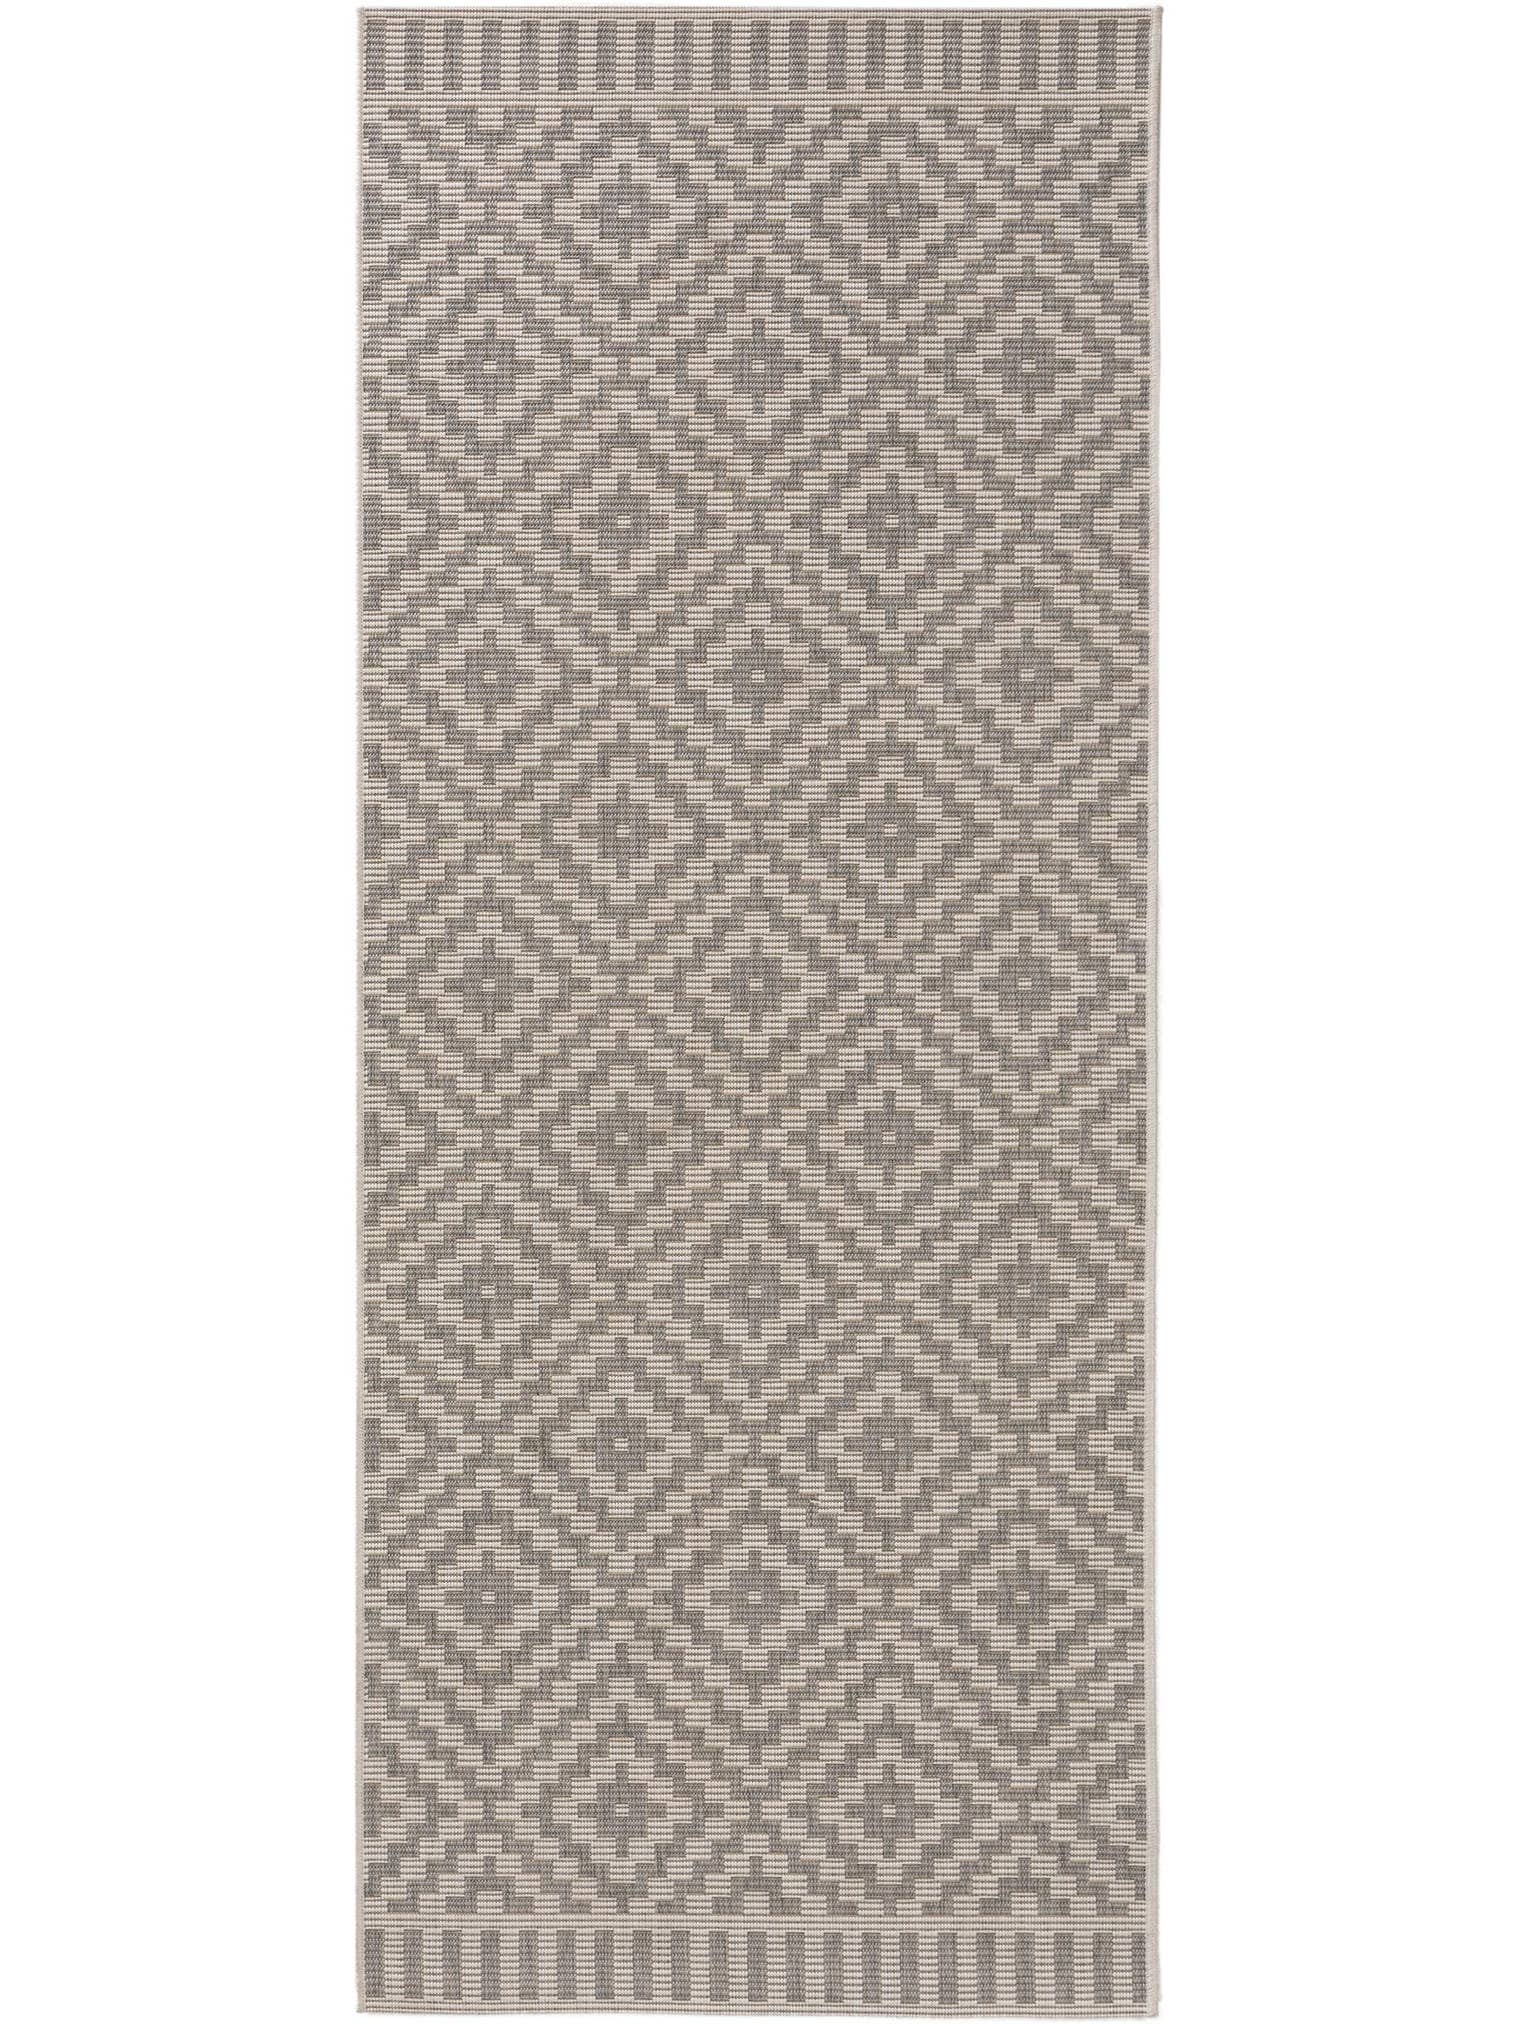 Teppich aus 100% Polypropylen in Grau mit 6 bis 10 mm hohem Flor von benuta Nest